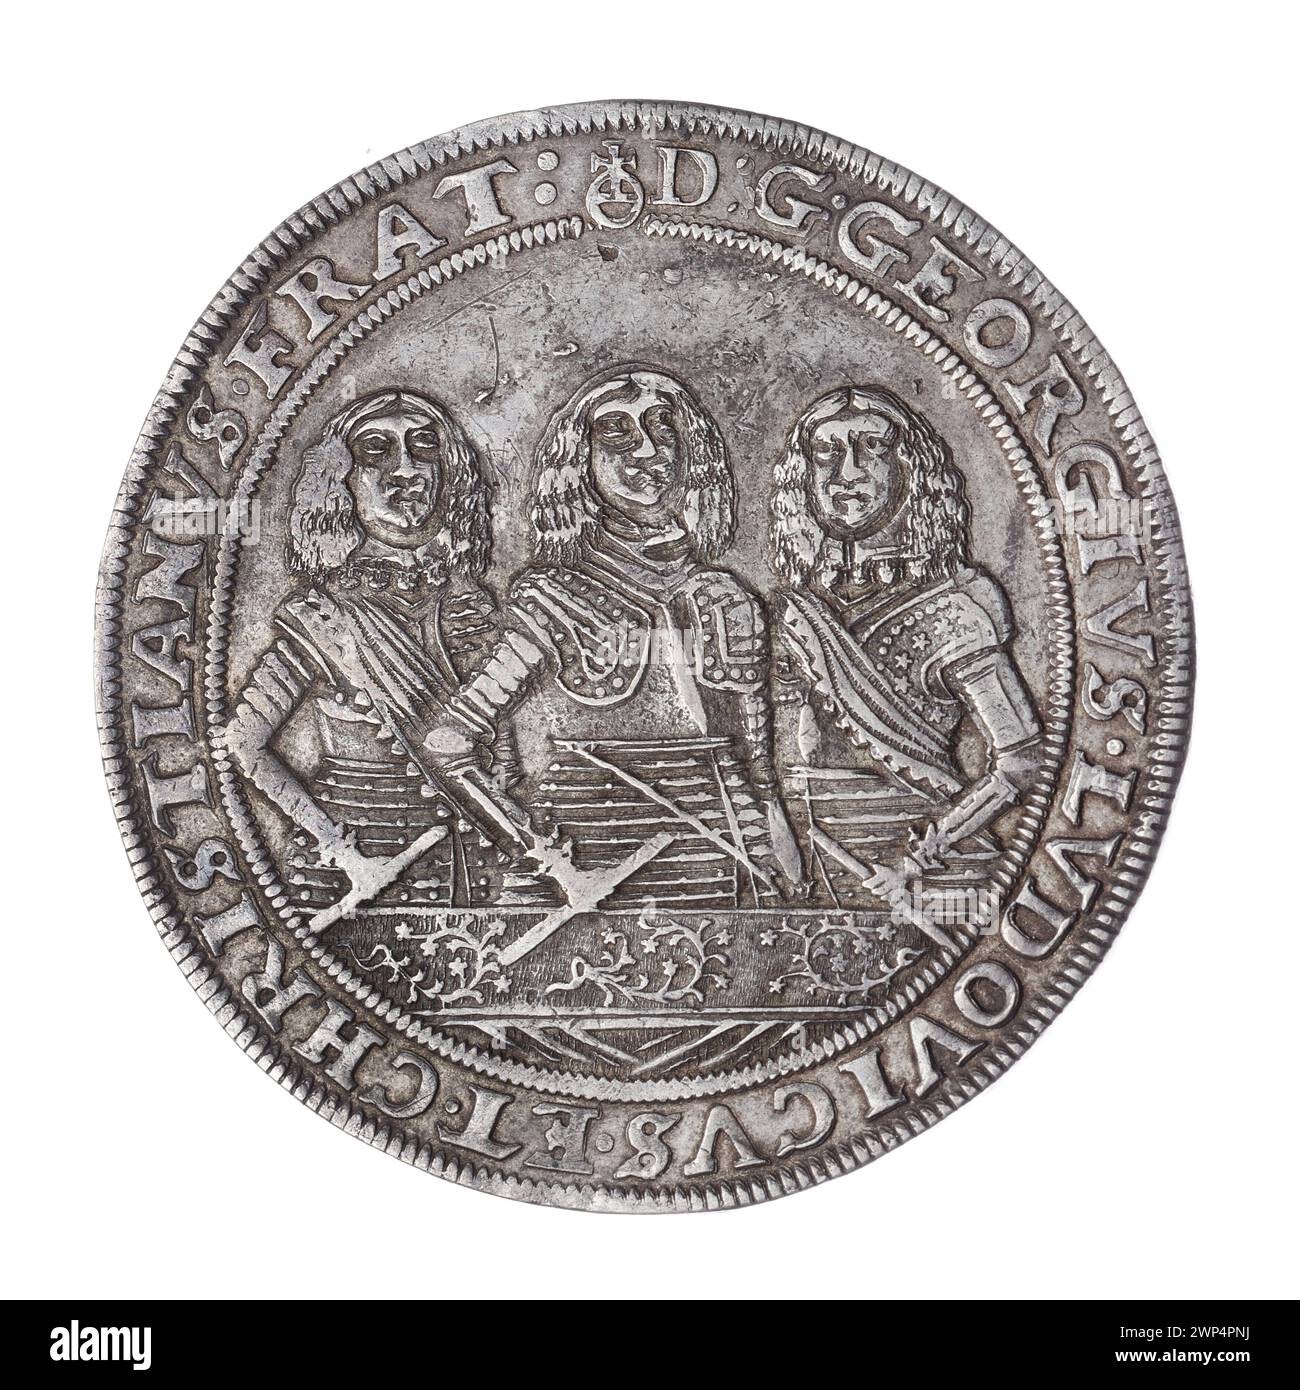 thaler; Jerzy III (ksi Brzesko-Legnicka-Wośowski; 1611-1664), Ludwik IV (KSI Brzesko-Rednicko-Wośców; 1616-1663), Christian (ksi Brzesko-Legnicko-Wośowski; 1618-1672), Pfahler, Christian (fl. 1651-1665), Weiss, Elias (FL. 1657-1673); 1658 (1658-00-00-1658-00); Christian (Fürst von Brest-Legnicka-Wołowski-1618-1672), Christian (Fürst von Brest-Legnicki-Wołowski-1618-1672)-Ikonographie, Jerzy III (Fürst von Brest-Legnicka- 1663-1611 1616-1664), Jerzy III (Fürst und Legnica-1611-1664) - Ikonographie, Ludwik IV (Fürst Legnicki-1616-1663) Stockfoto